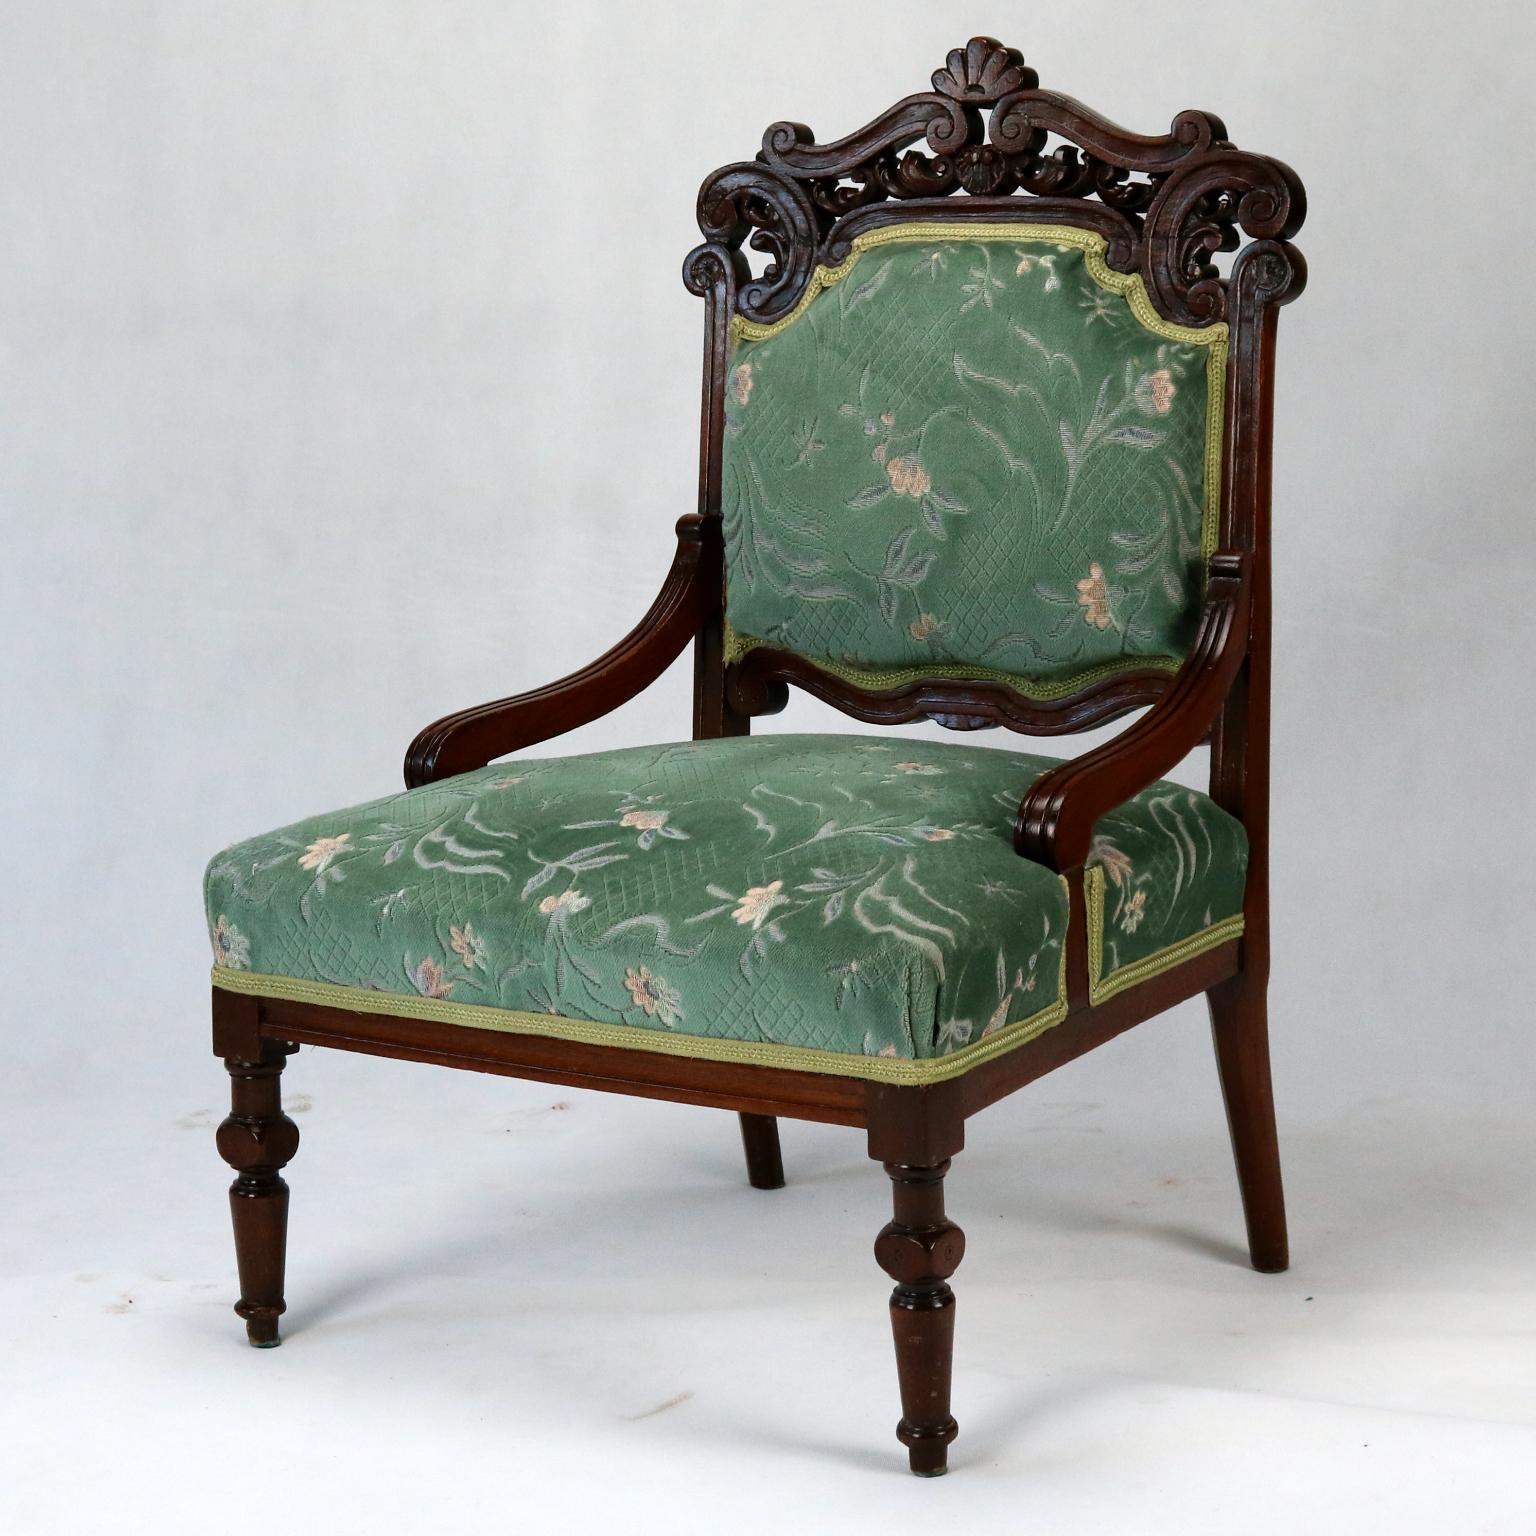 Geschnitzte Sessel aus Buche, spätes 19. Jahrhundert (Neorenaissance)